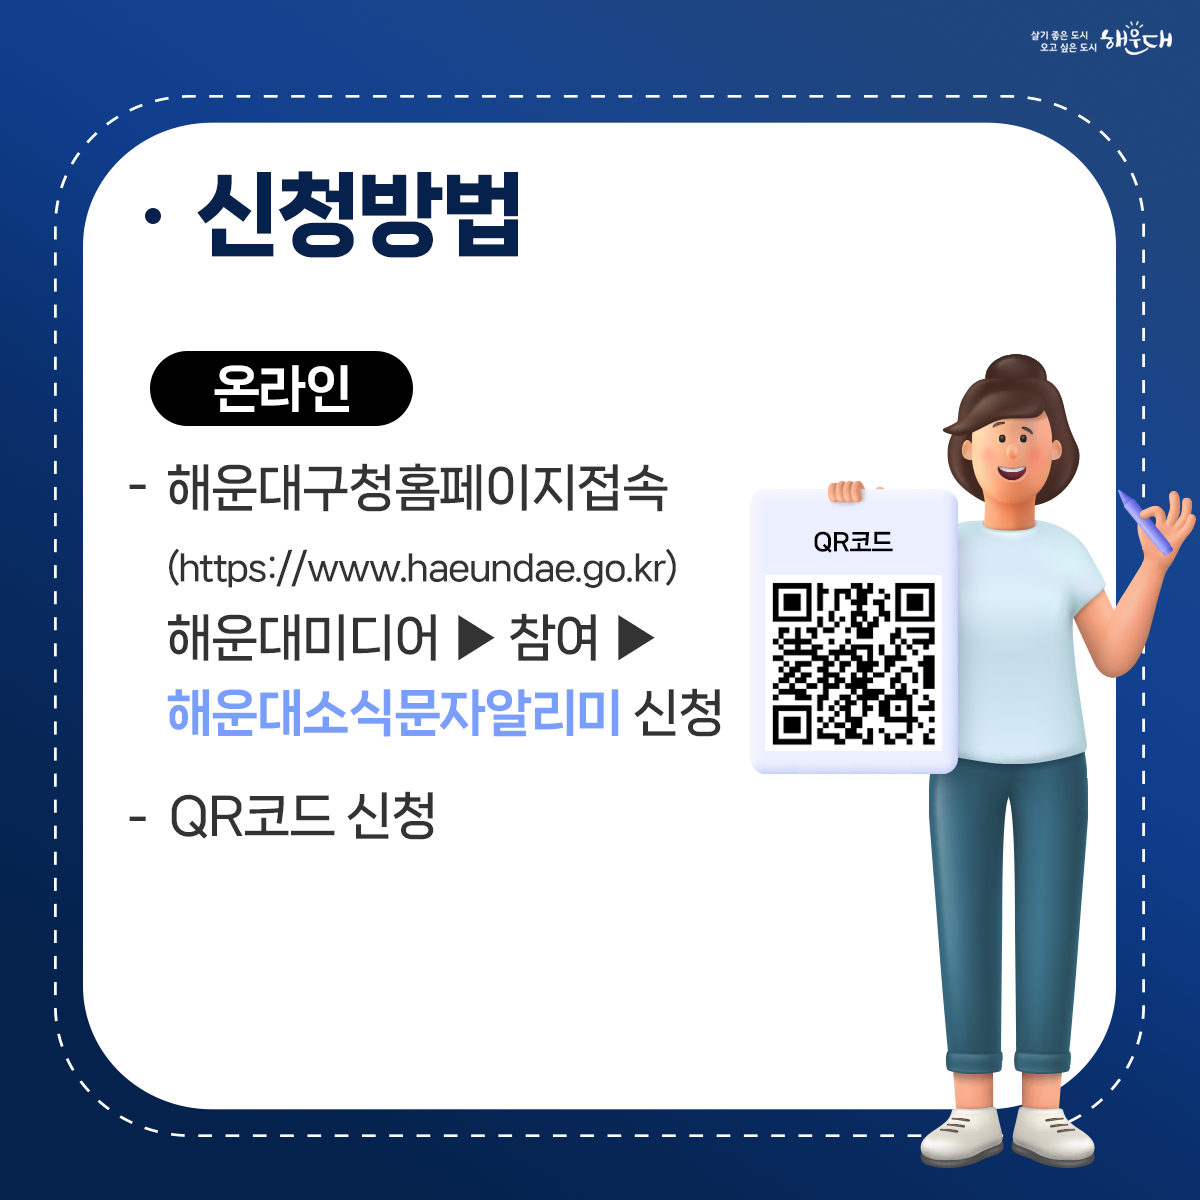 신청방법 - 온라인 : 해운대구청홈페이지접속(https://www.haeundae.go.kr) 해운대미디어 홈페이지 > 참여 메뉴 > 해운대소식문자알리미 신청메뉴에서 신청 혹은 QR코드 신청